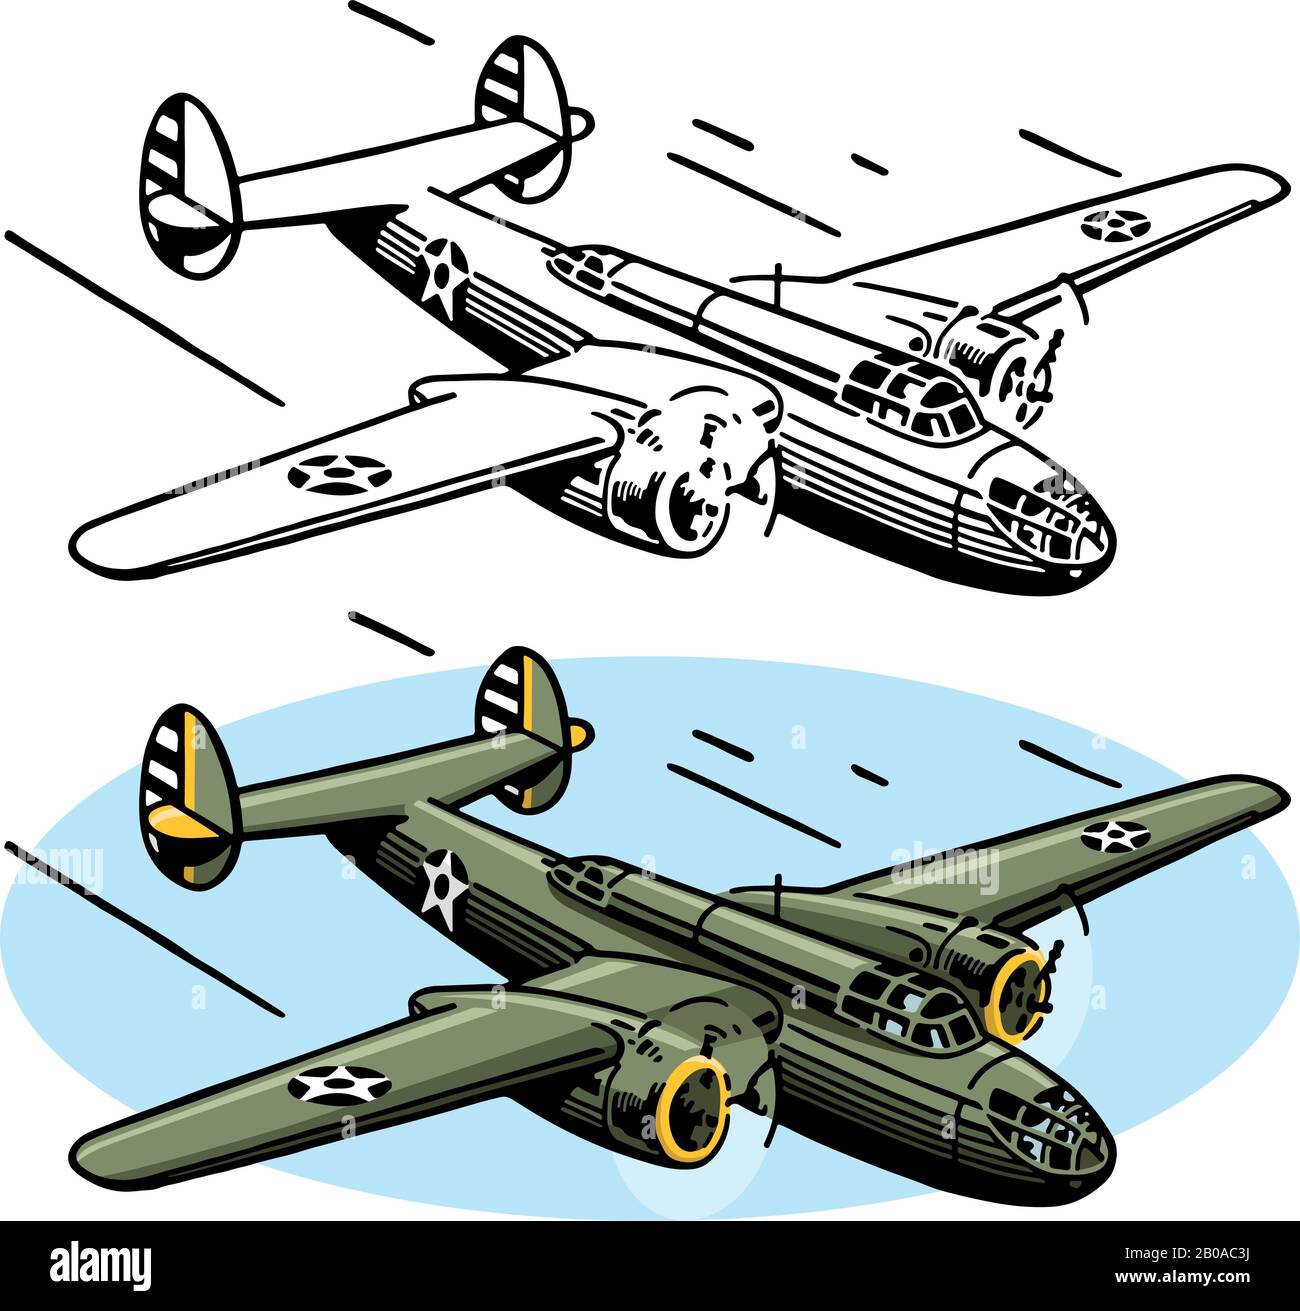 Un disegno del velivolo americano della seconda guerra mondiale il bombardiere B-25. Illustrazione Vettoriale